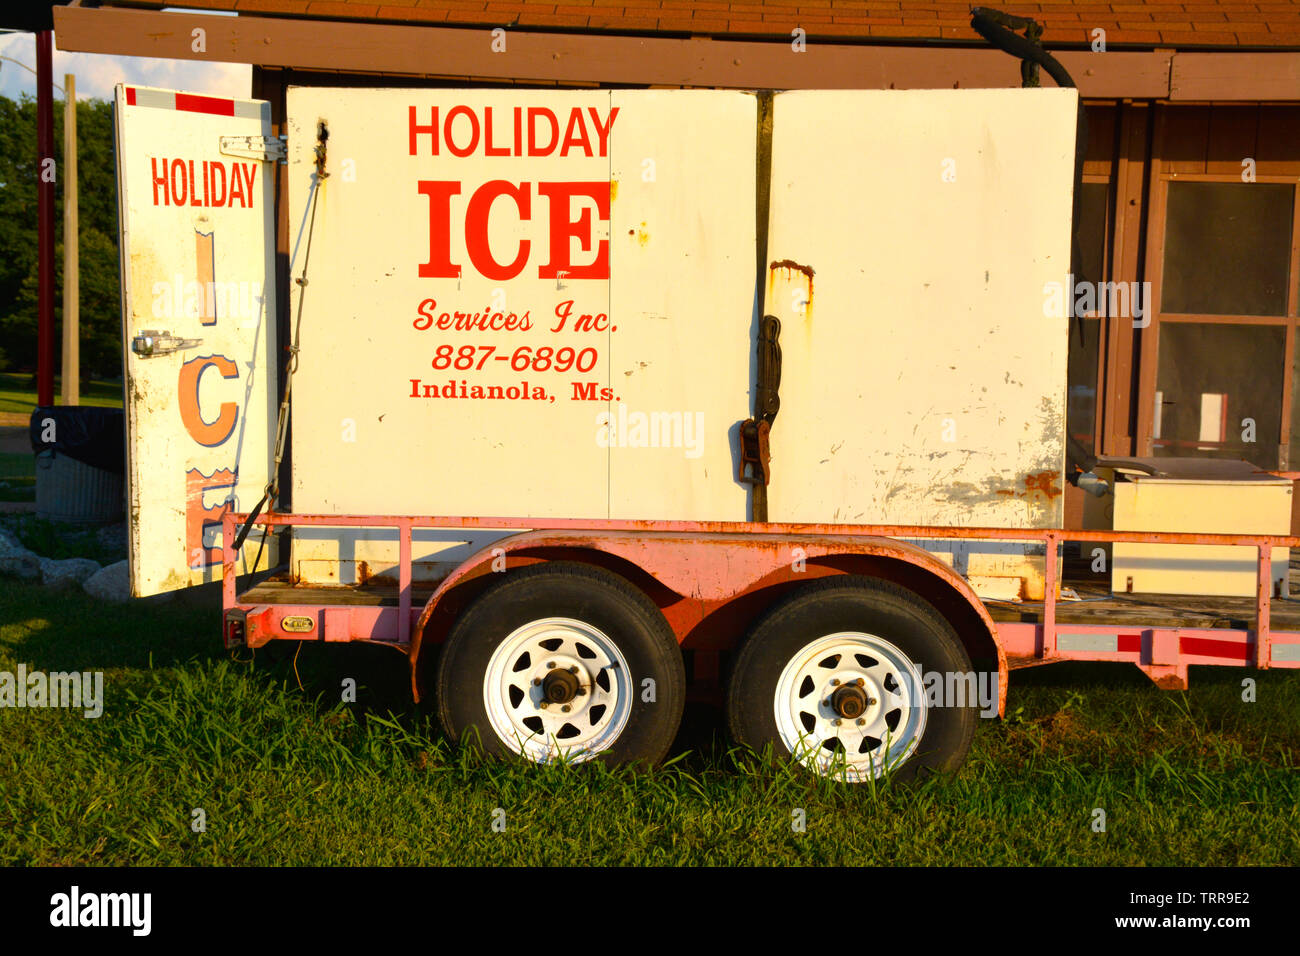 Ein Vintage rot-weiße Anhänger für den Urlaub Eis Unternehmen in Indianola, MS, bei Sonnenuntergang im nördlichen Mississippi Stockfoto